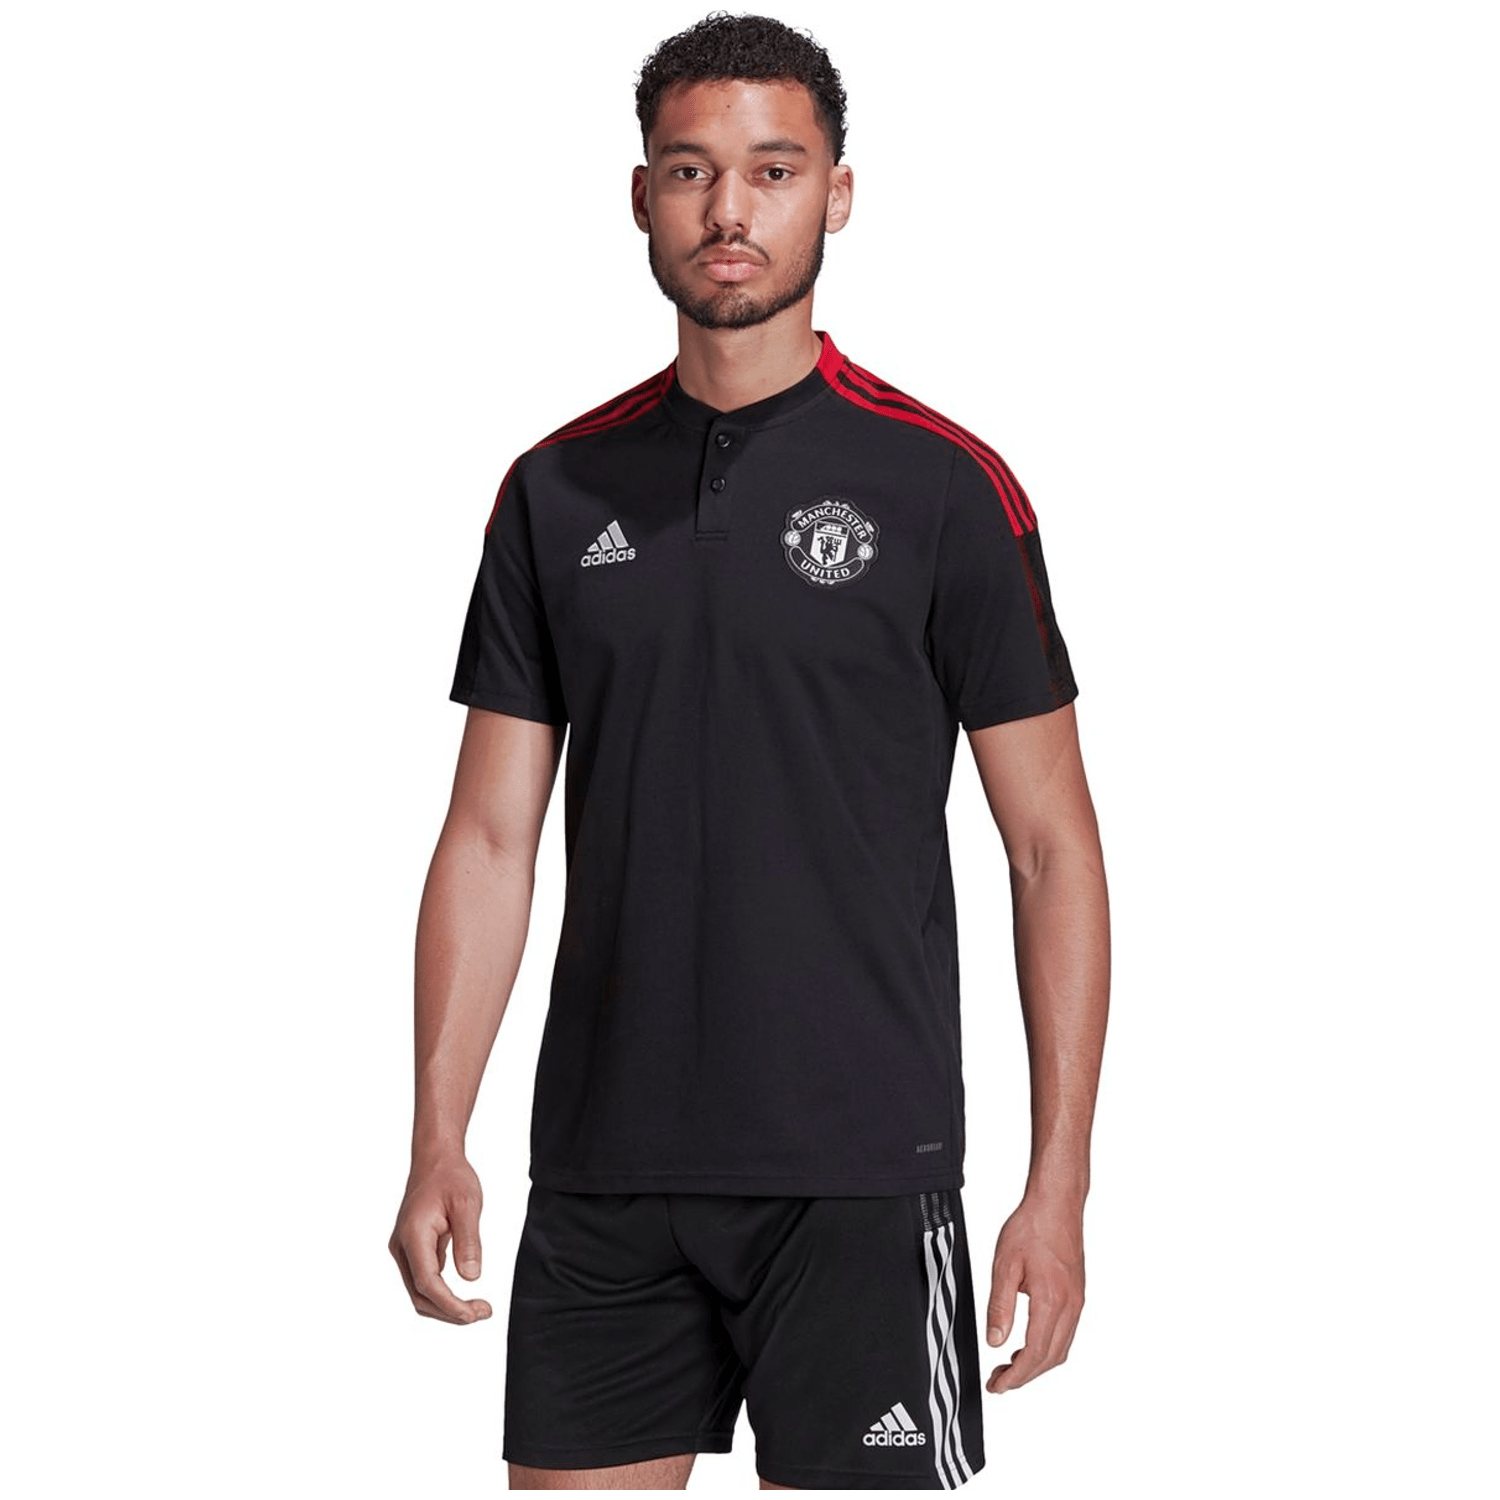 Adidas Manchester United Tiro Poloshirt Herren